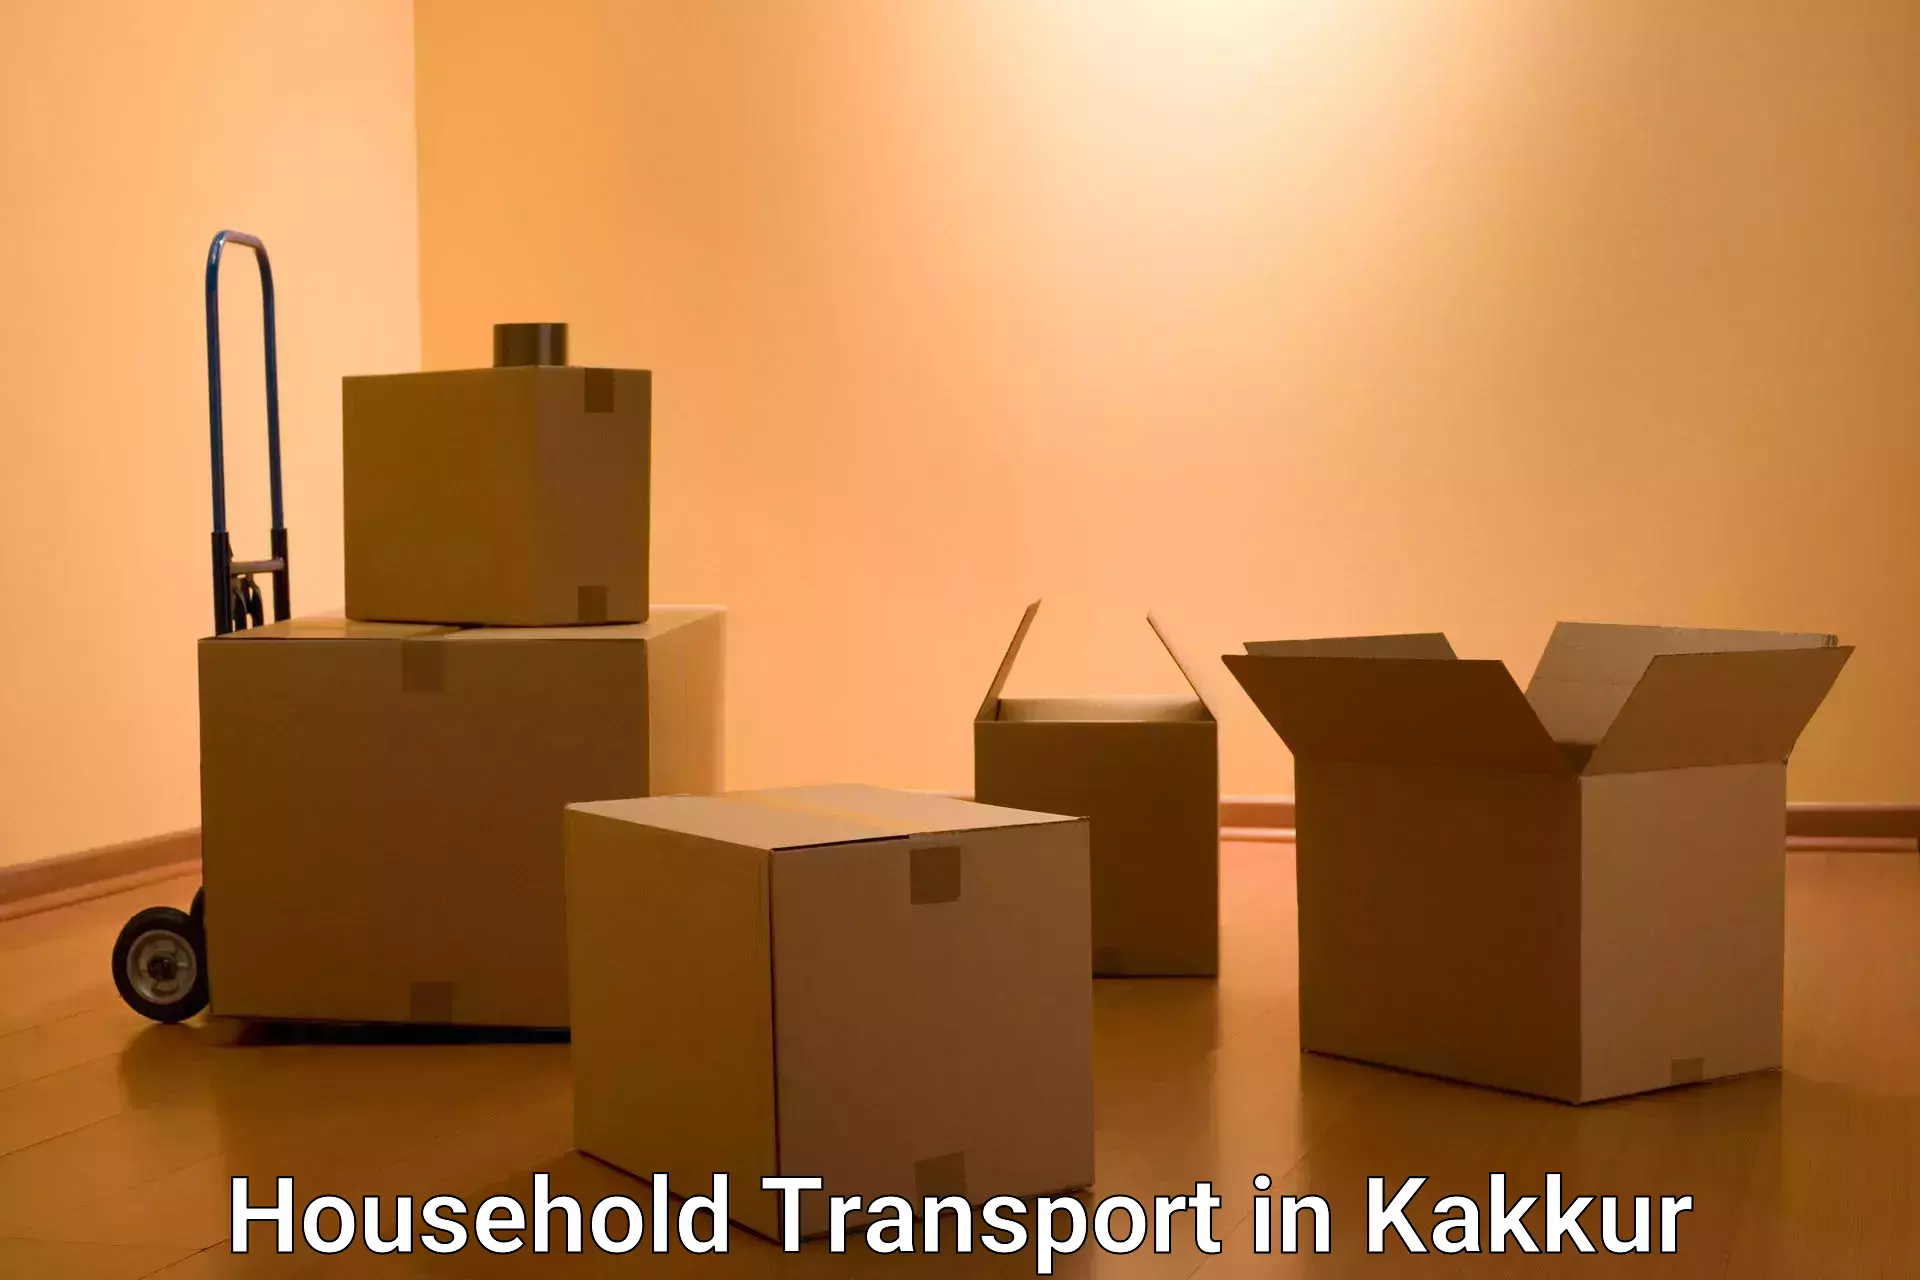 Household transport services in Kakkur